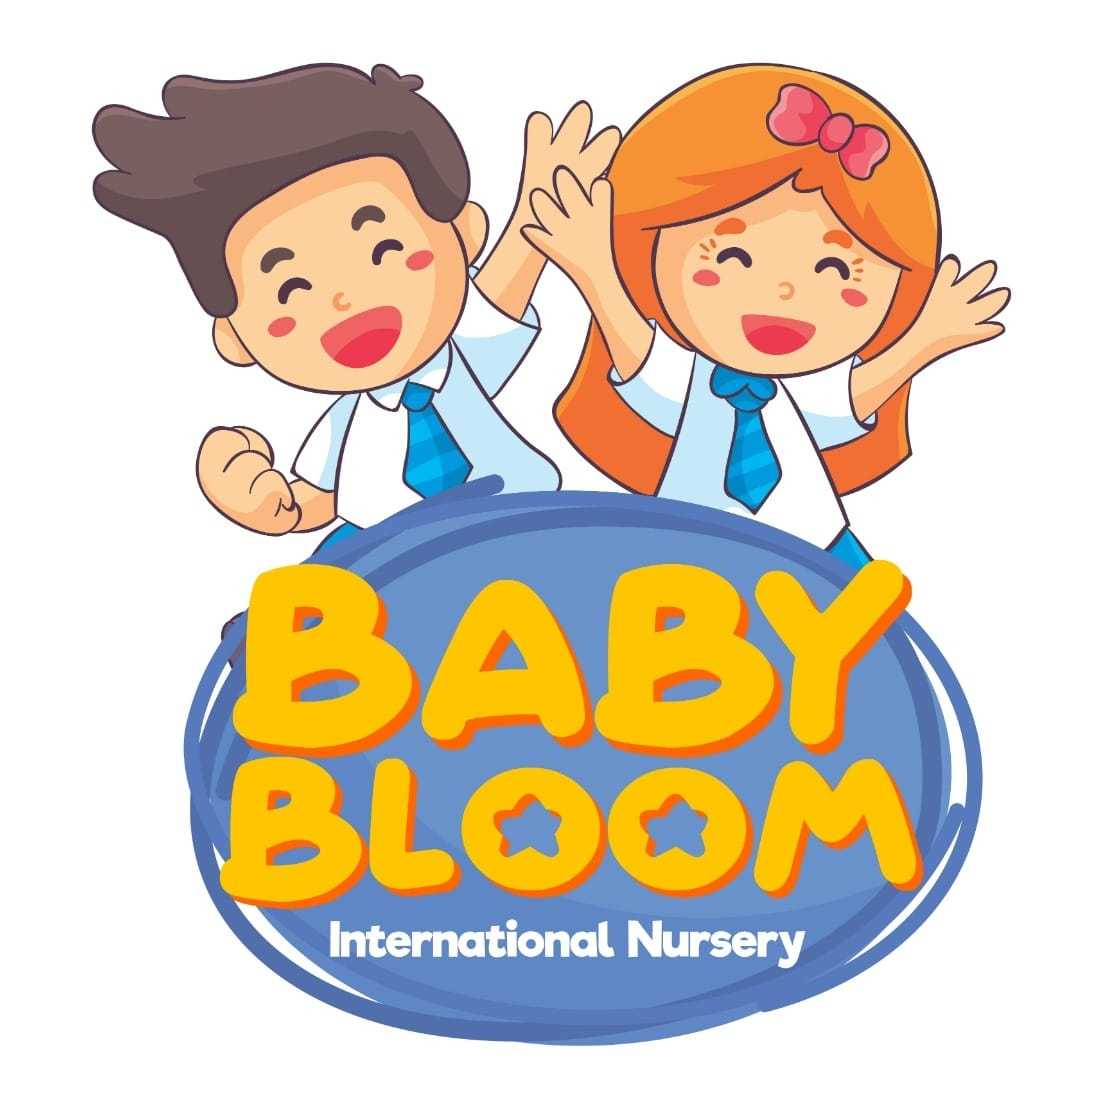 Baby bloom International nursery